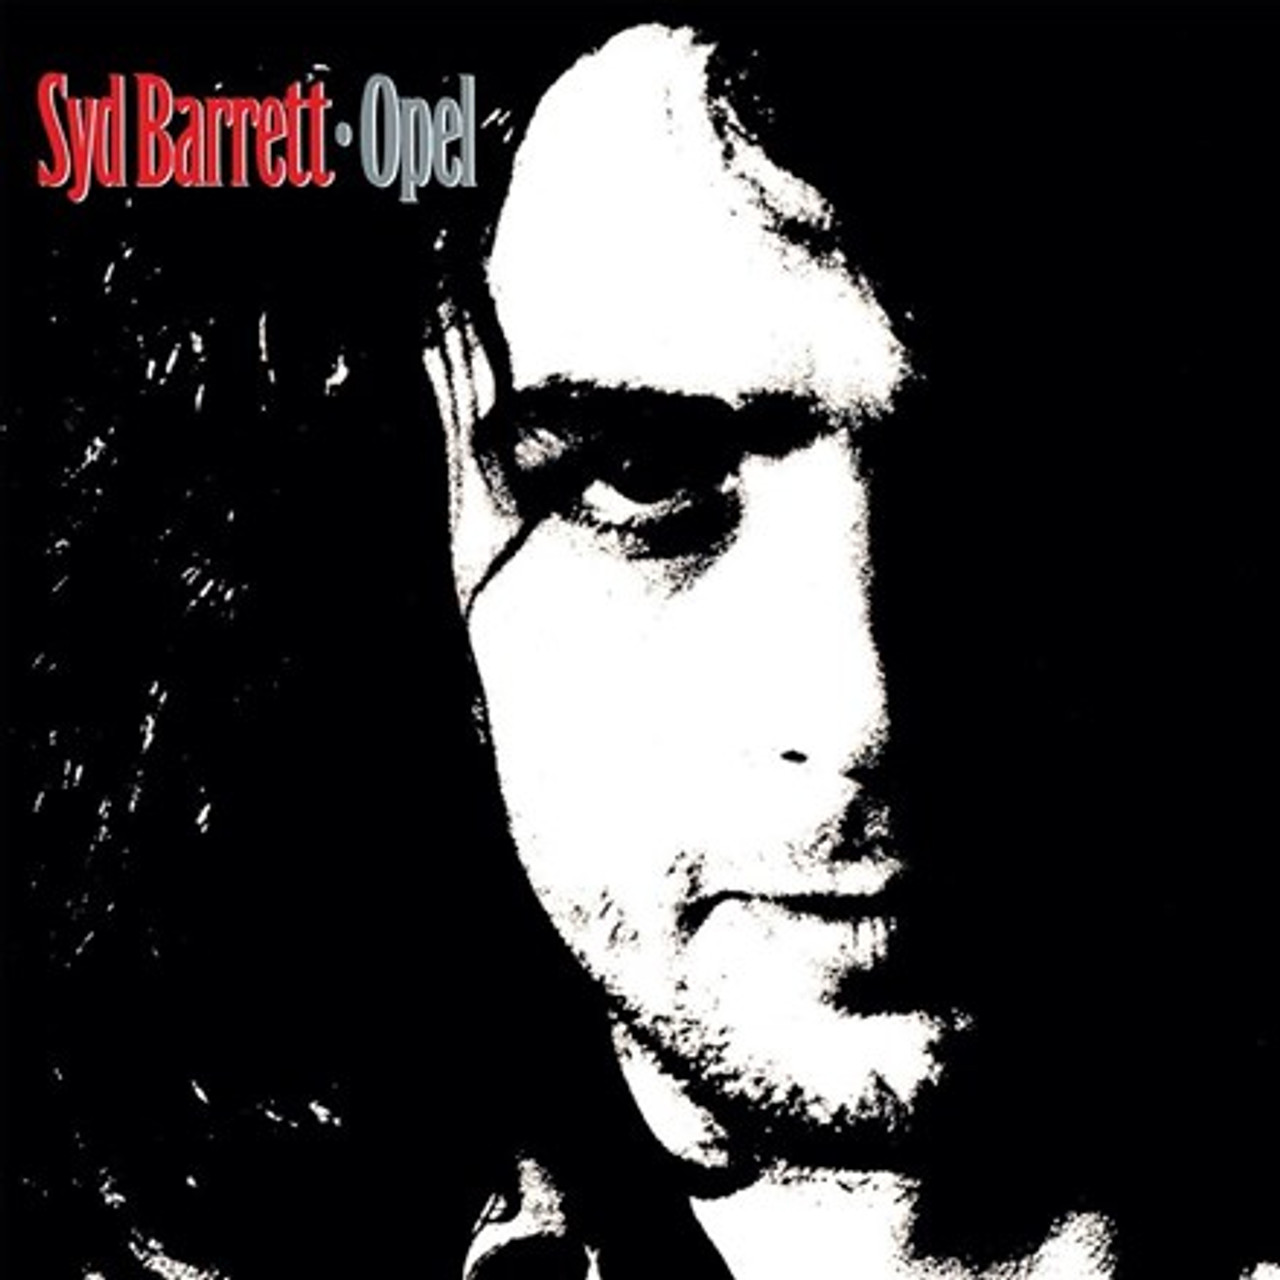 Syd Barrett - Opel (180g Import Vinyl LP) - Music Direct